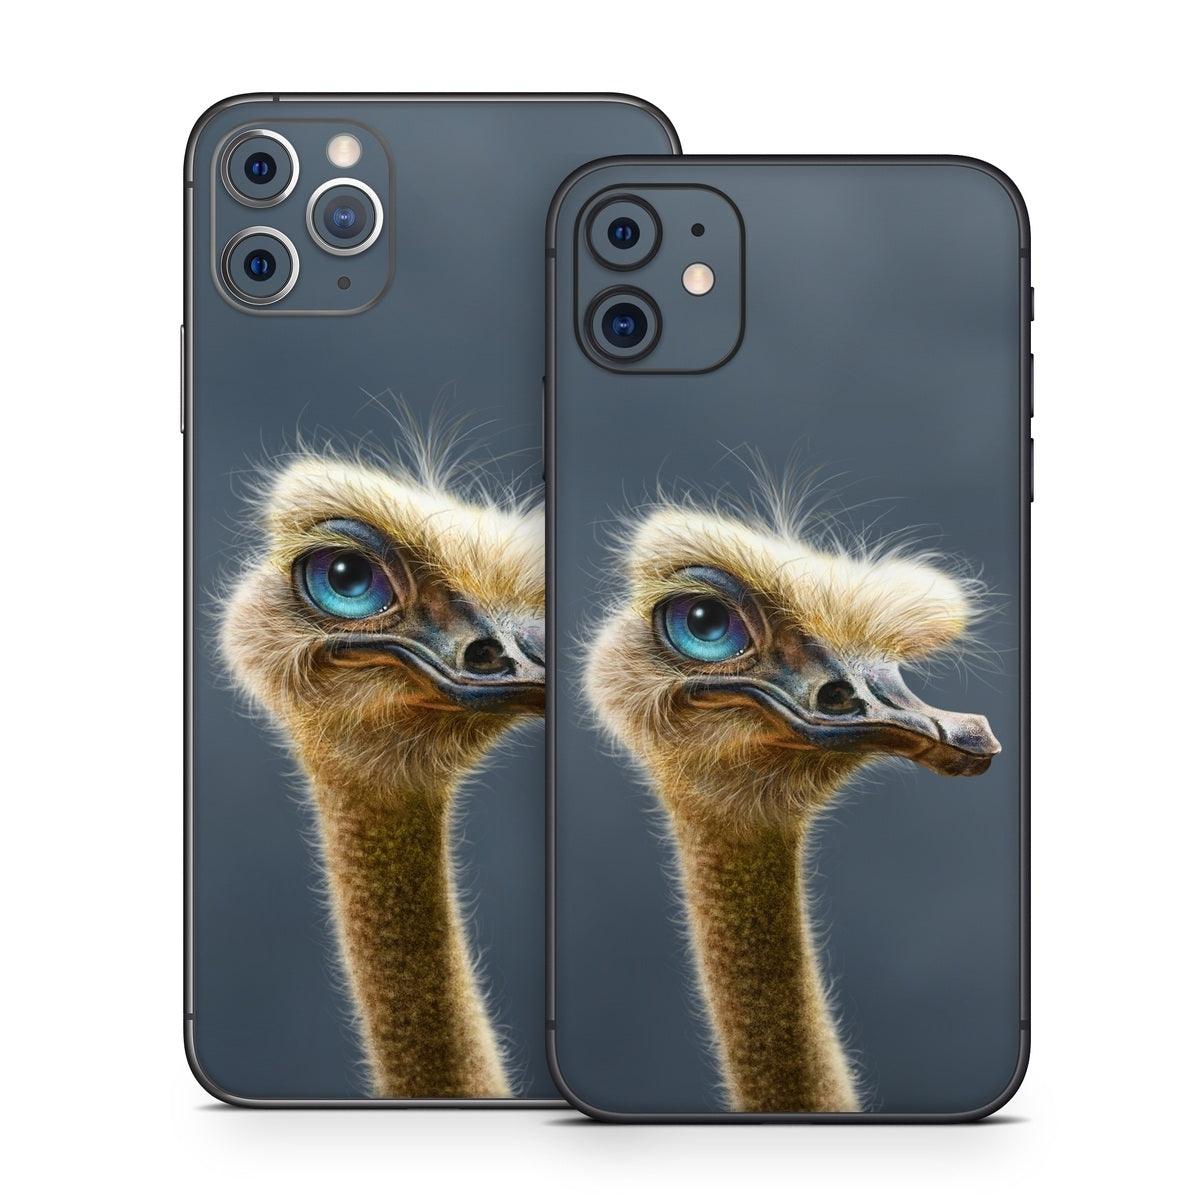 Ostrich Totem - Apple iPhone 11 Skin